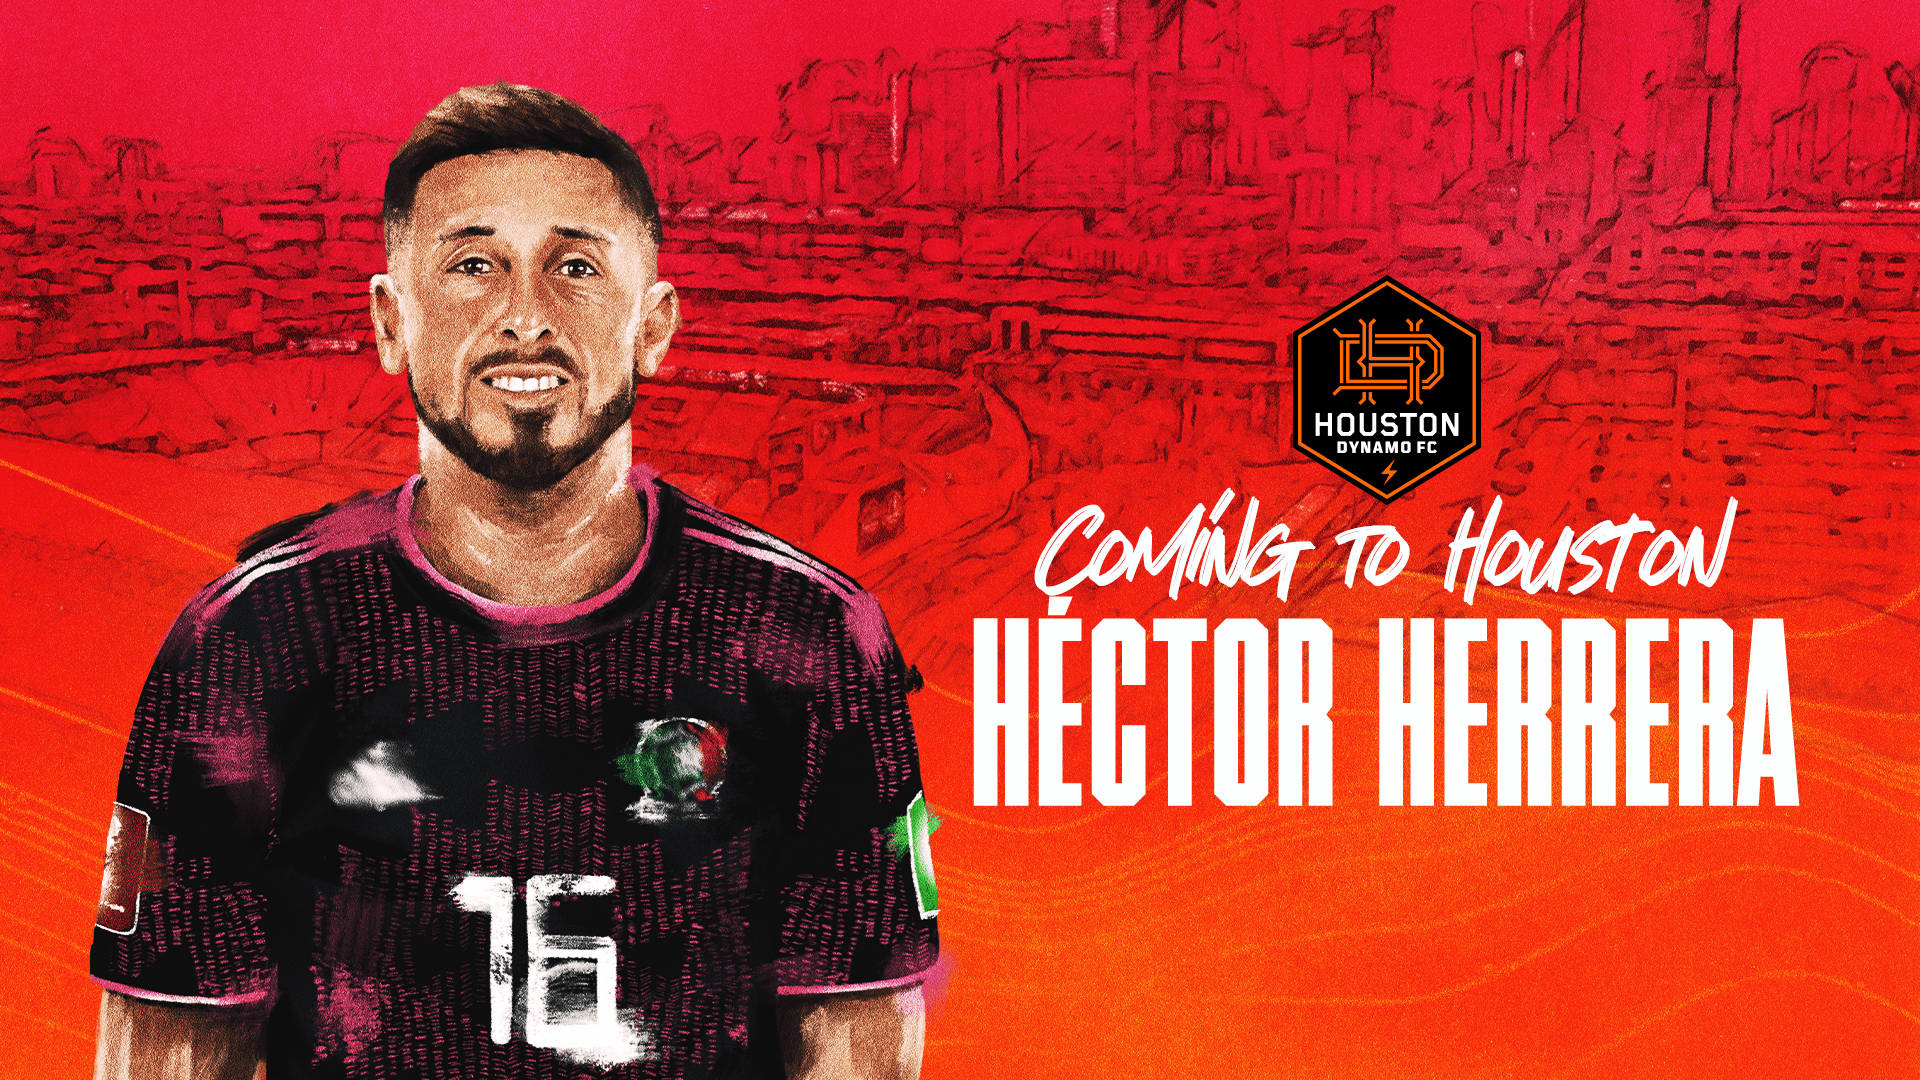 Hector Herrera Houston Dynamo Fodboldspiller tegneserie tapet Wallpaper